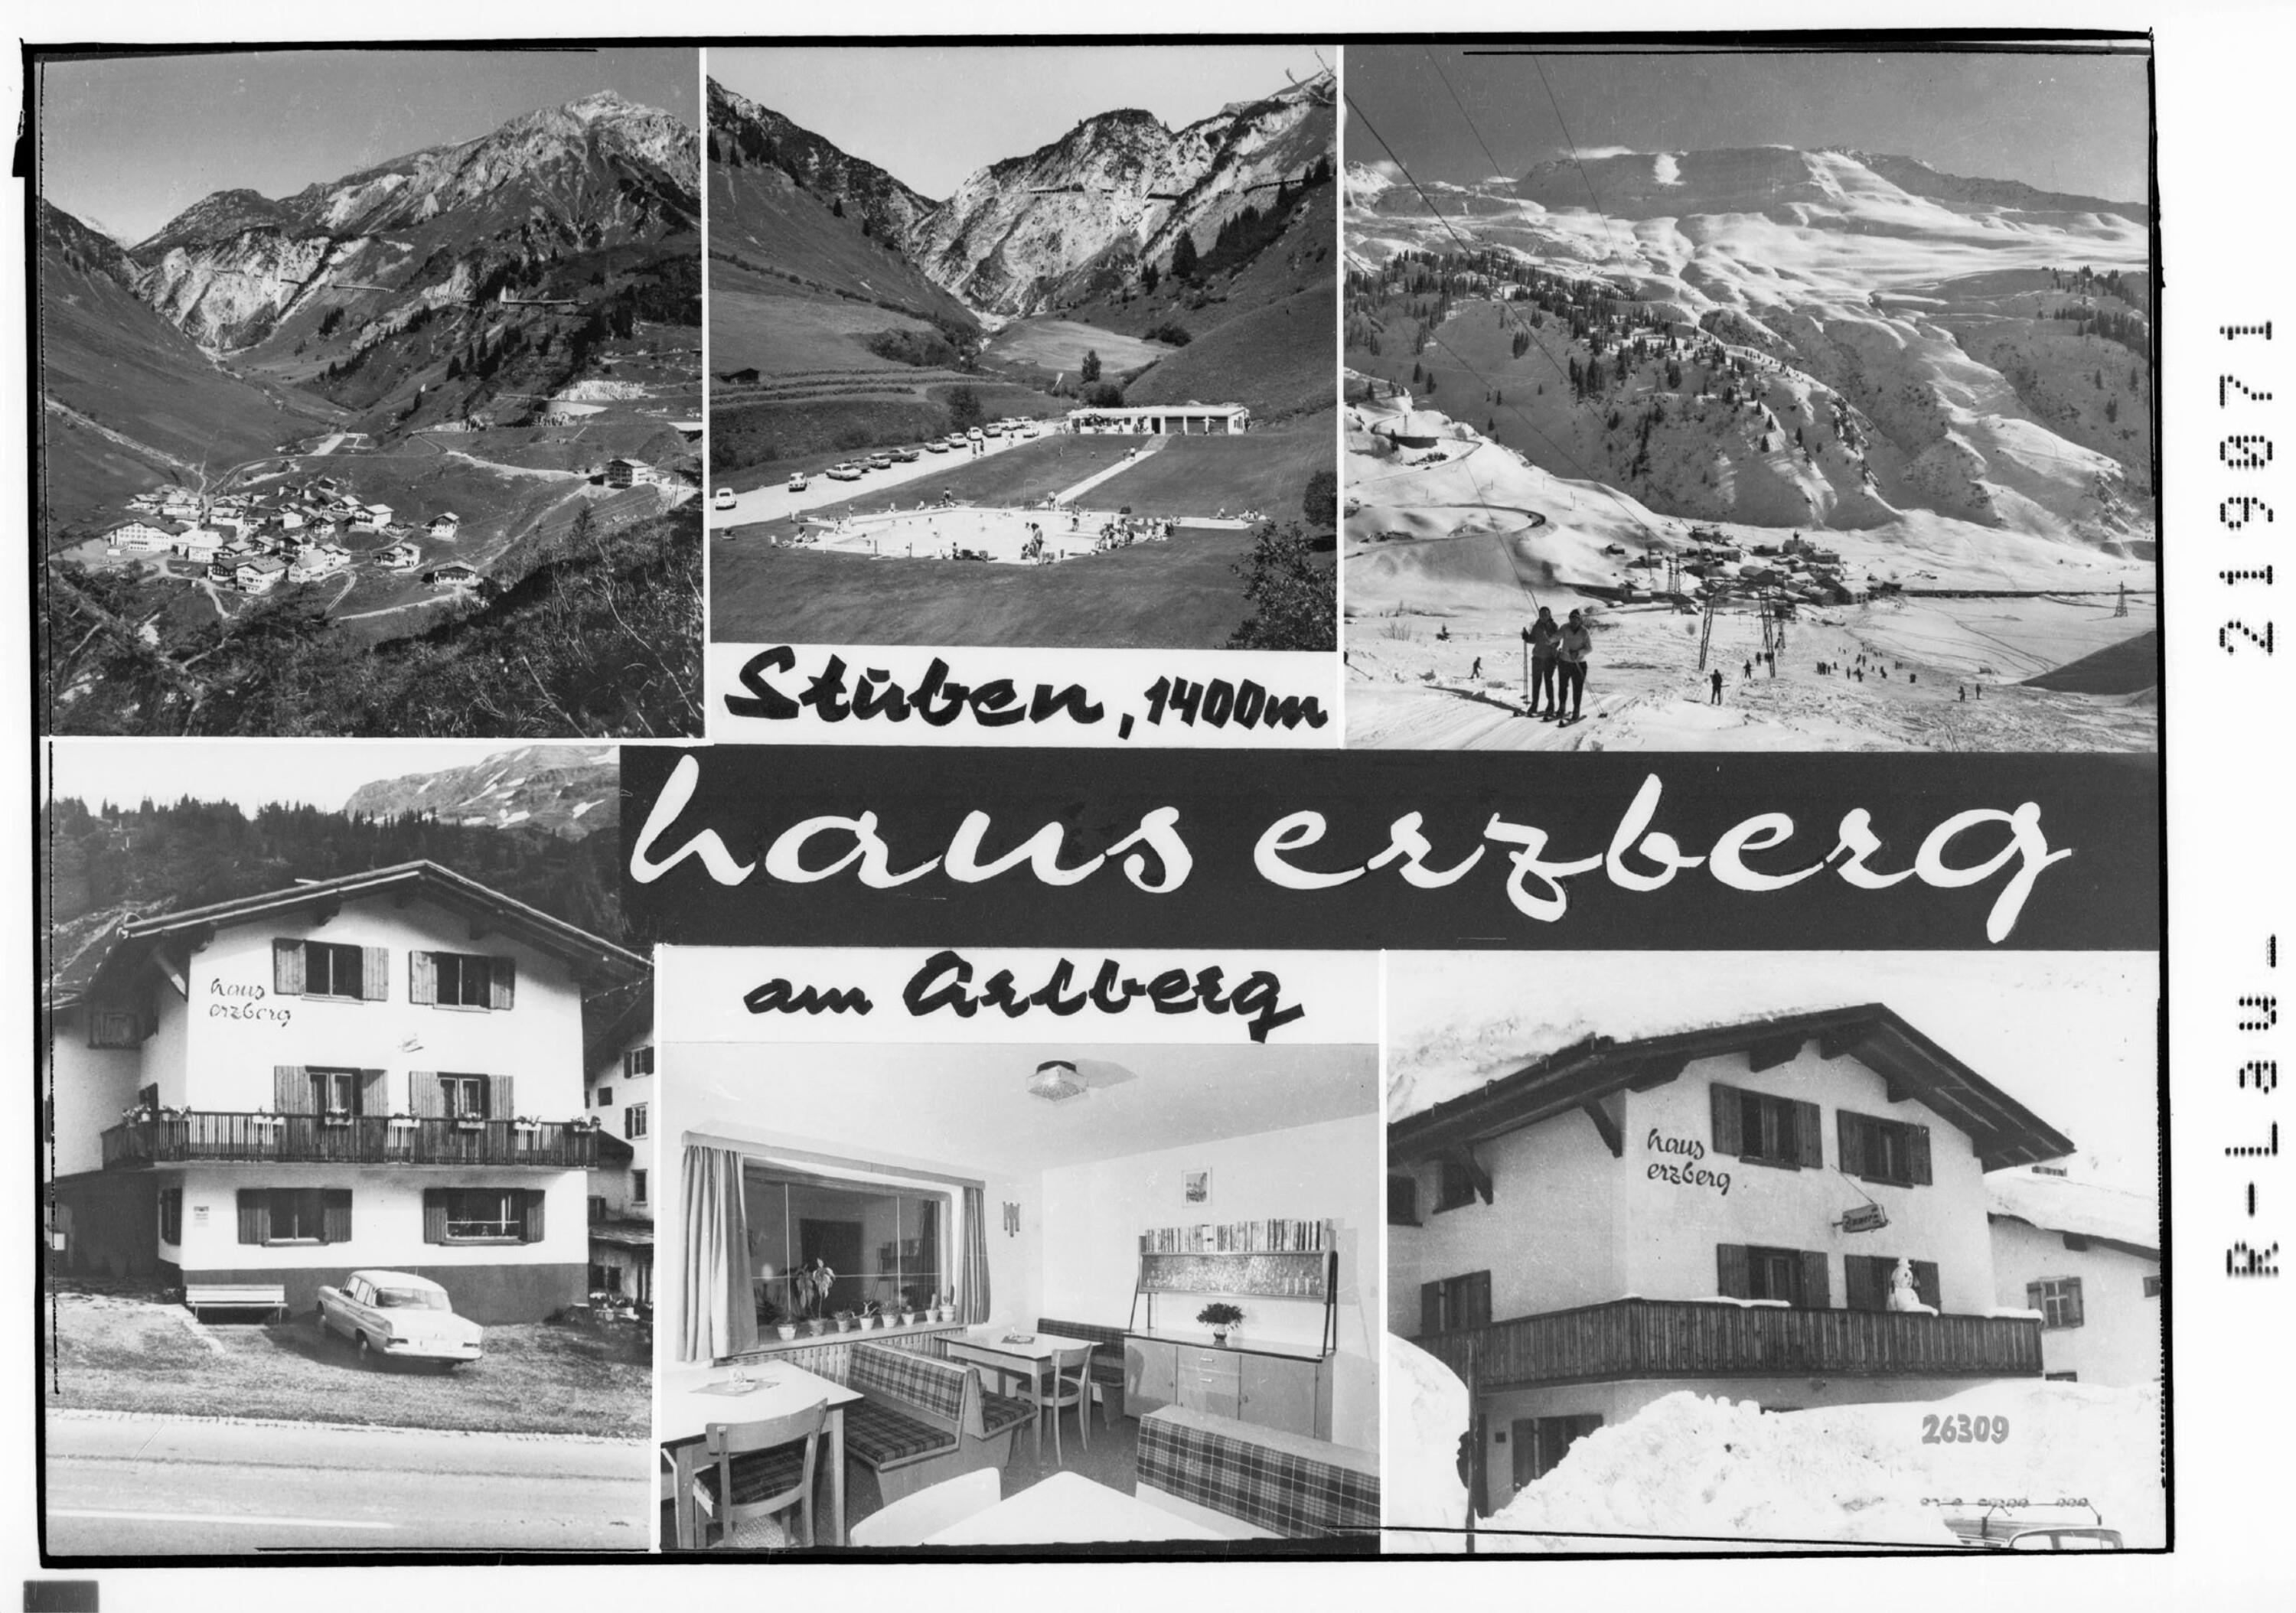 Stuben 1400 m Haus Erzberg am Arlberg></div>


    <hr>
    <div class=